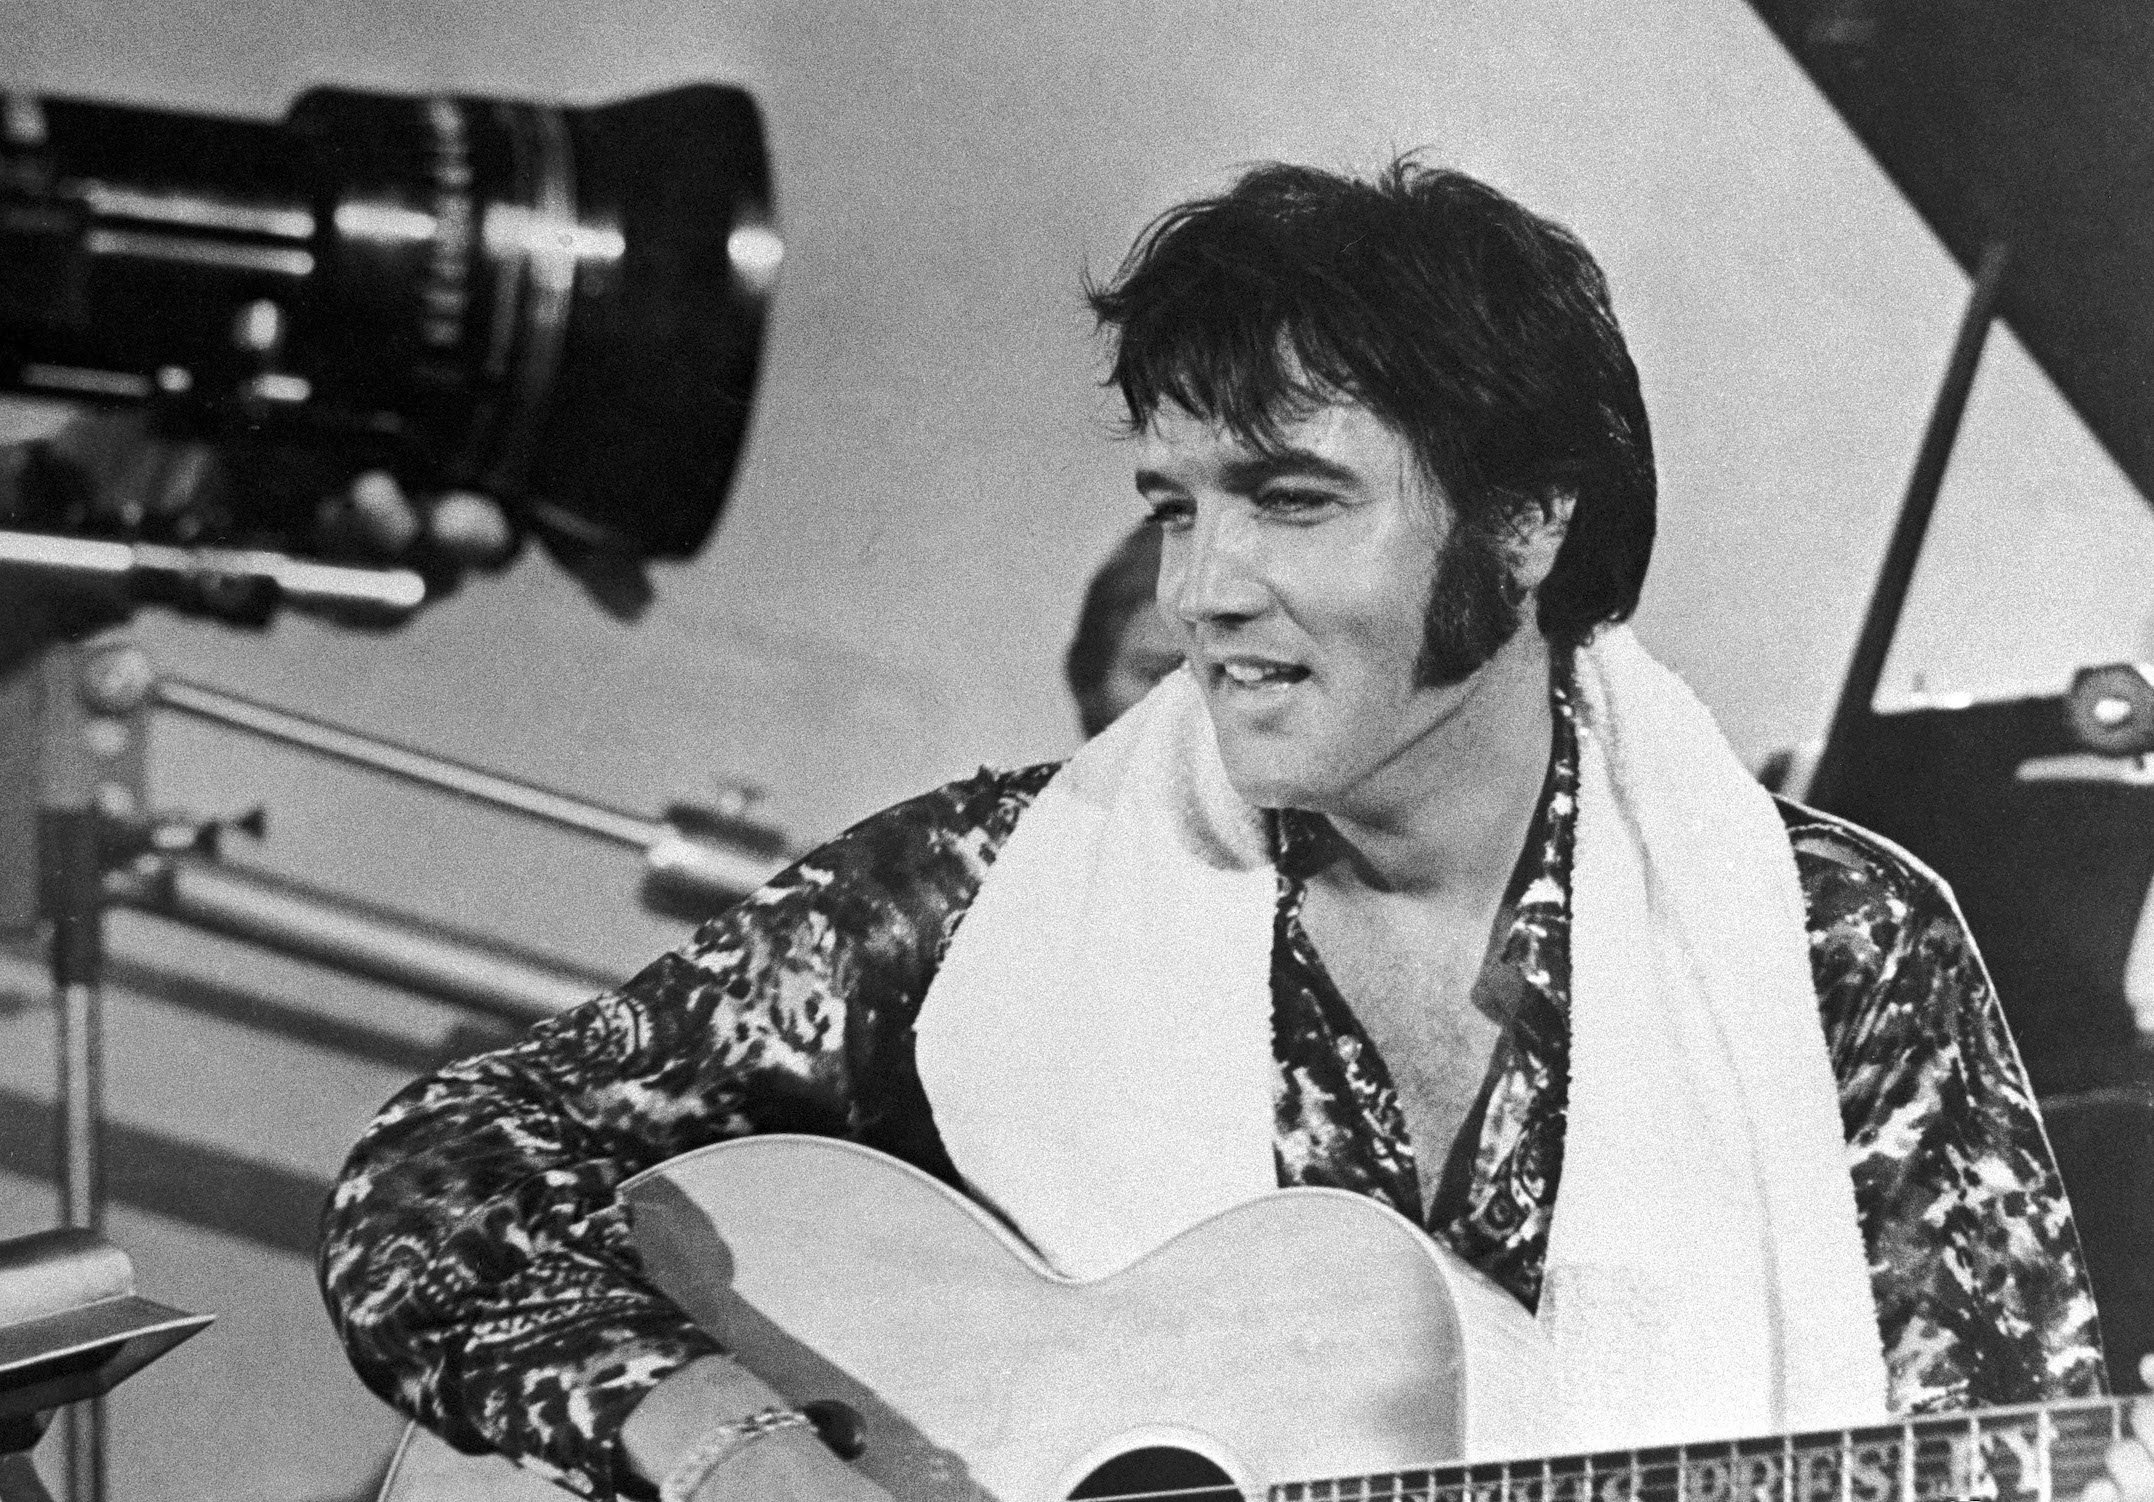 Elvis Presley on tour in 1972